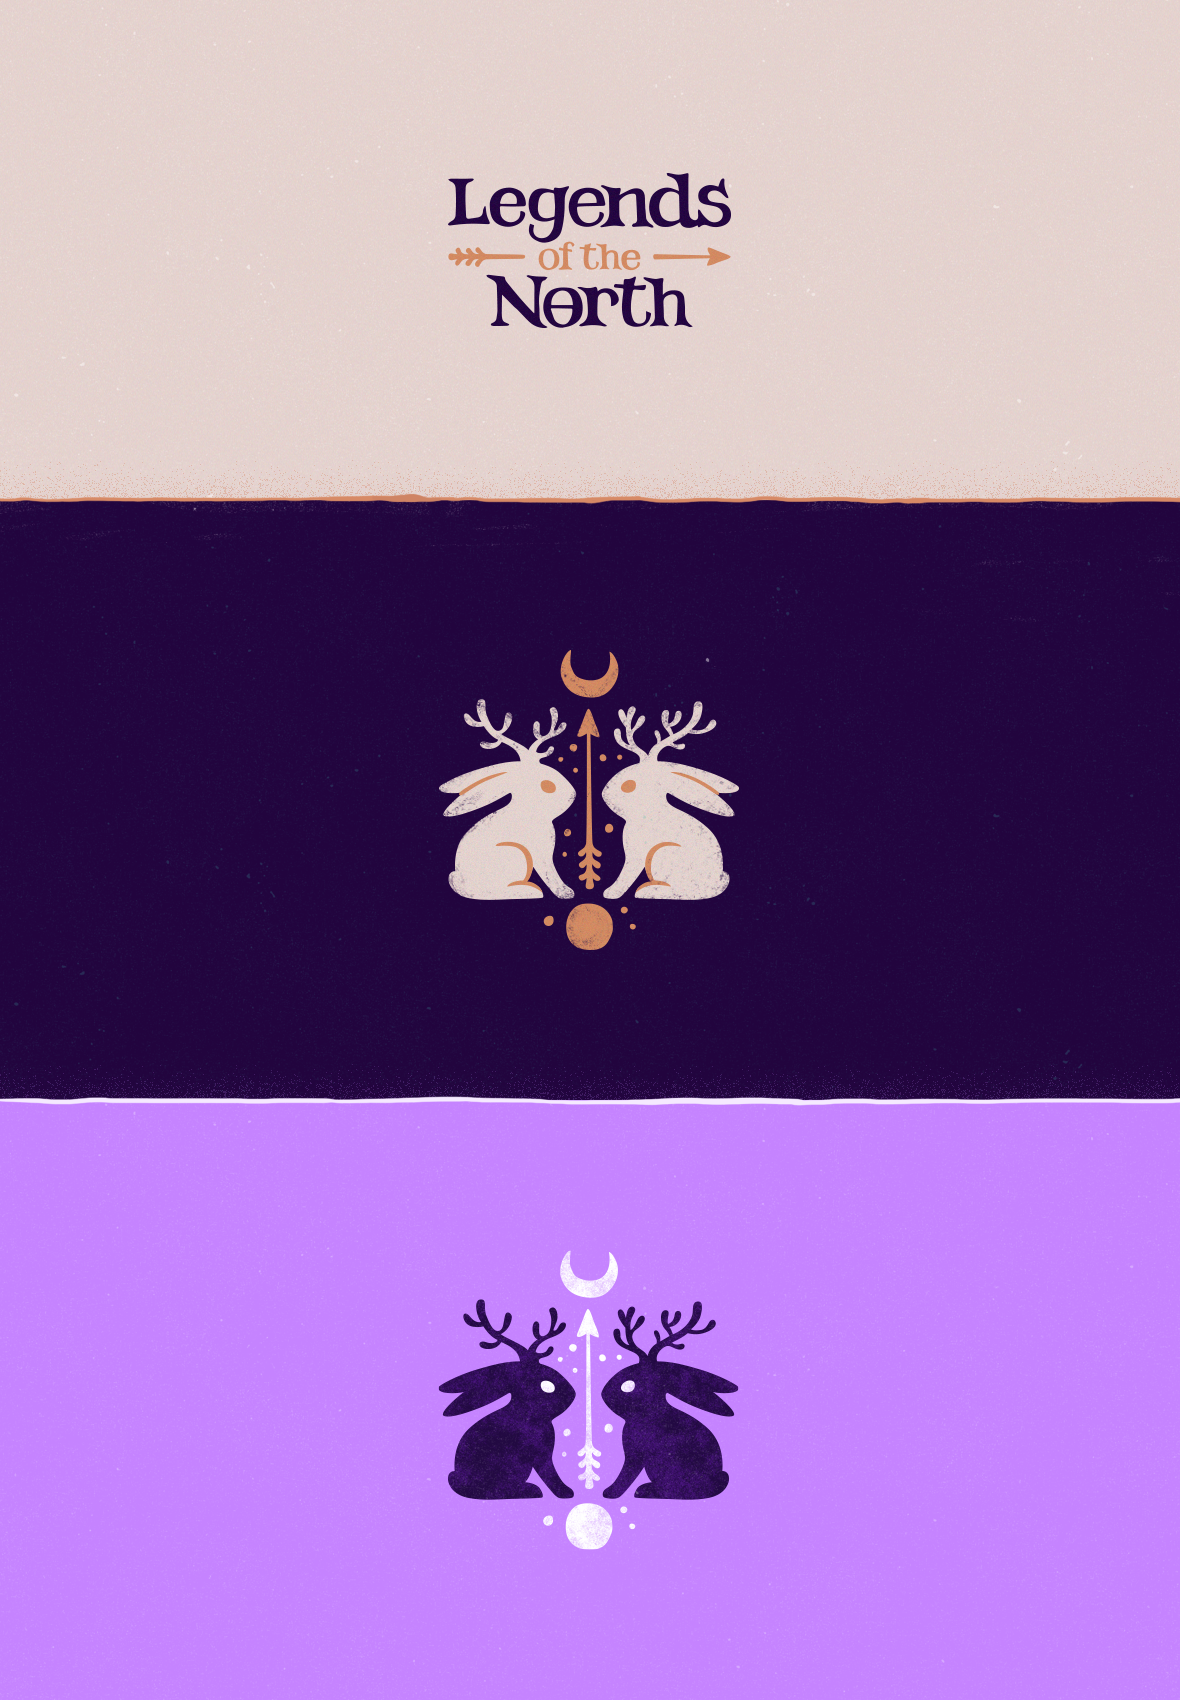 Legends of the North by Alexandra Erkaeva on Dribbble